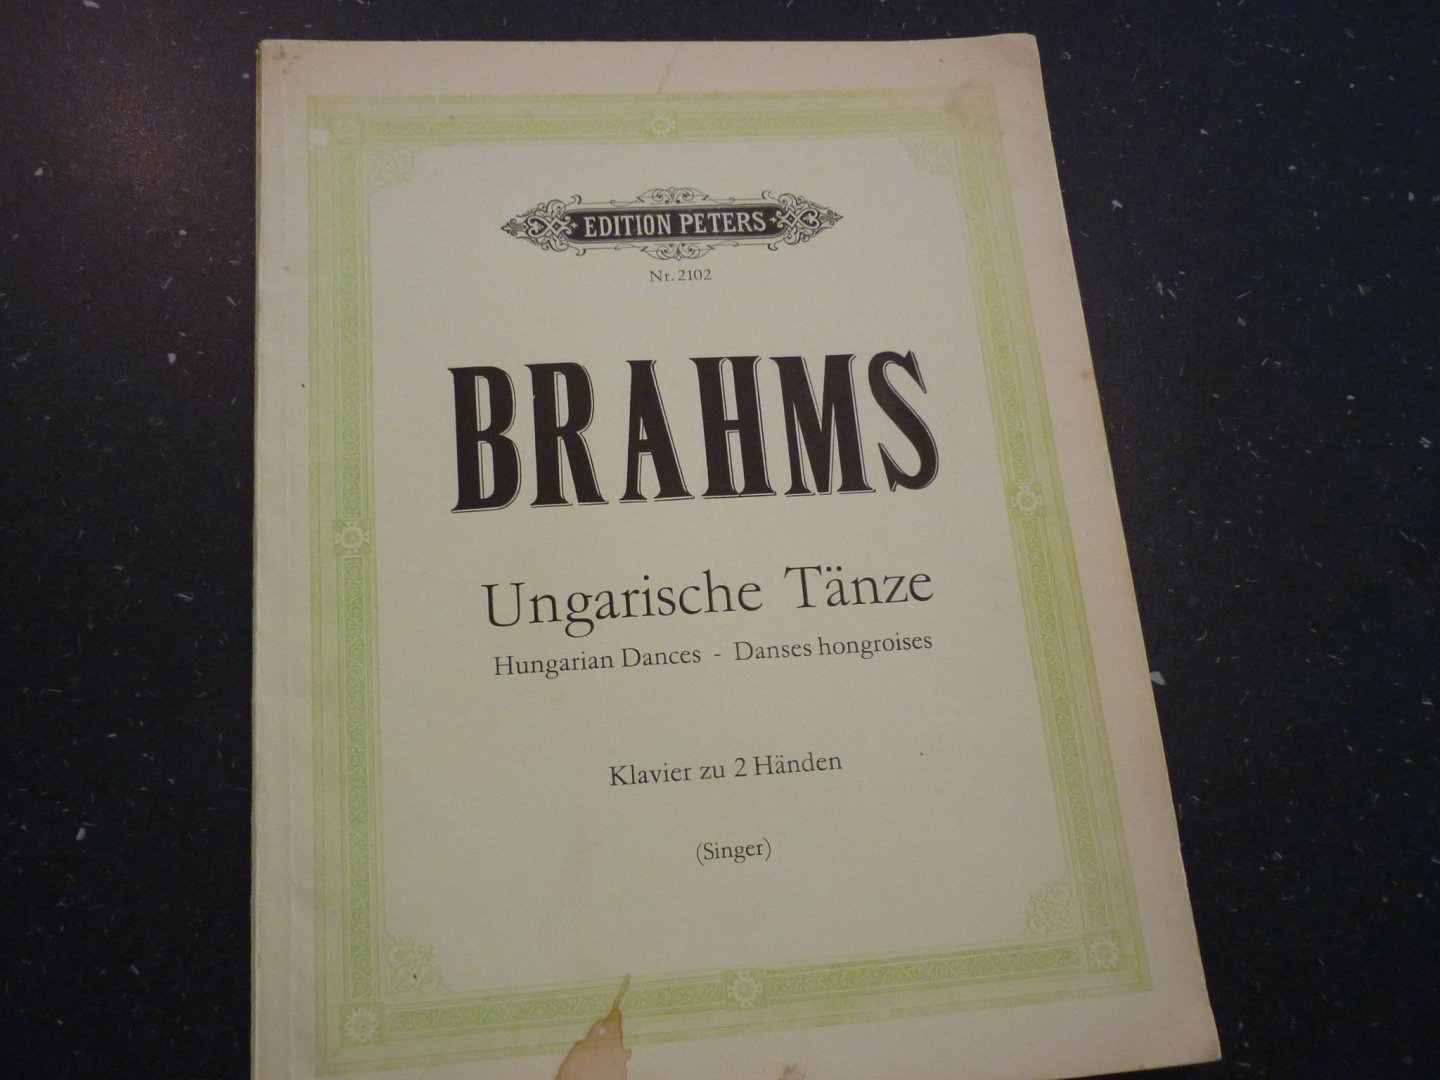 Brahms; Joh. - Ungarische Tanze - Klavier zu 2 handen